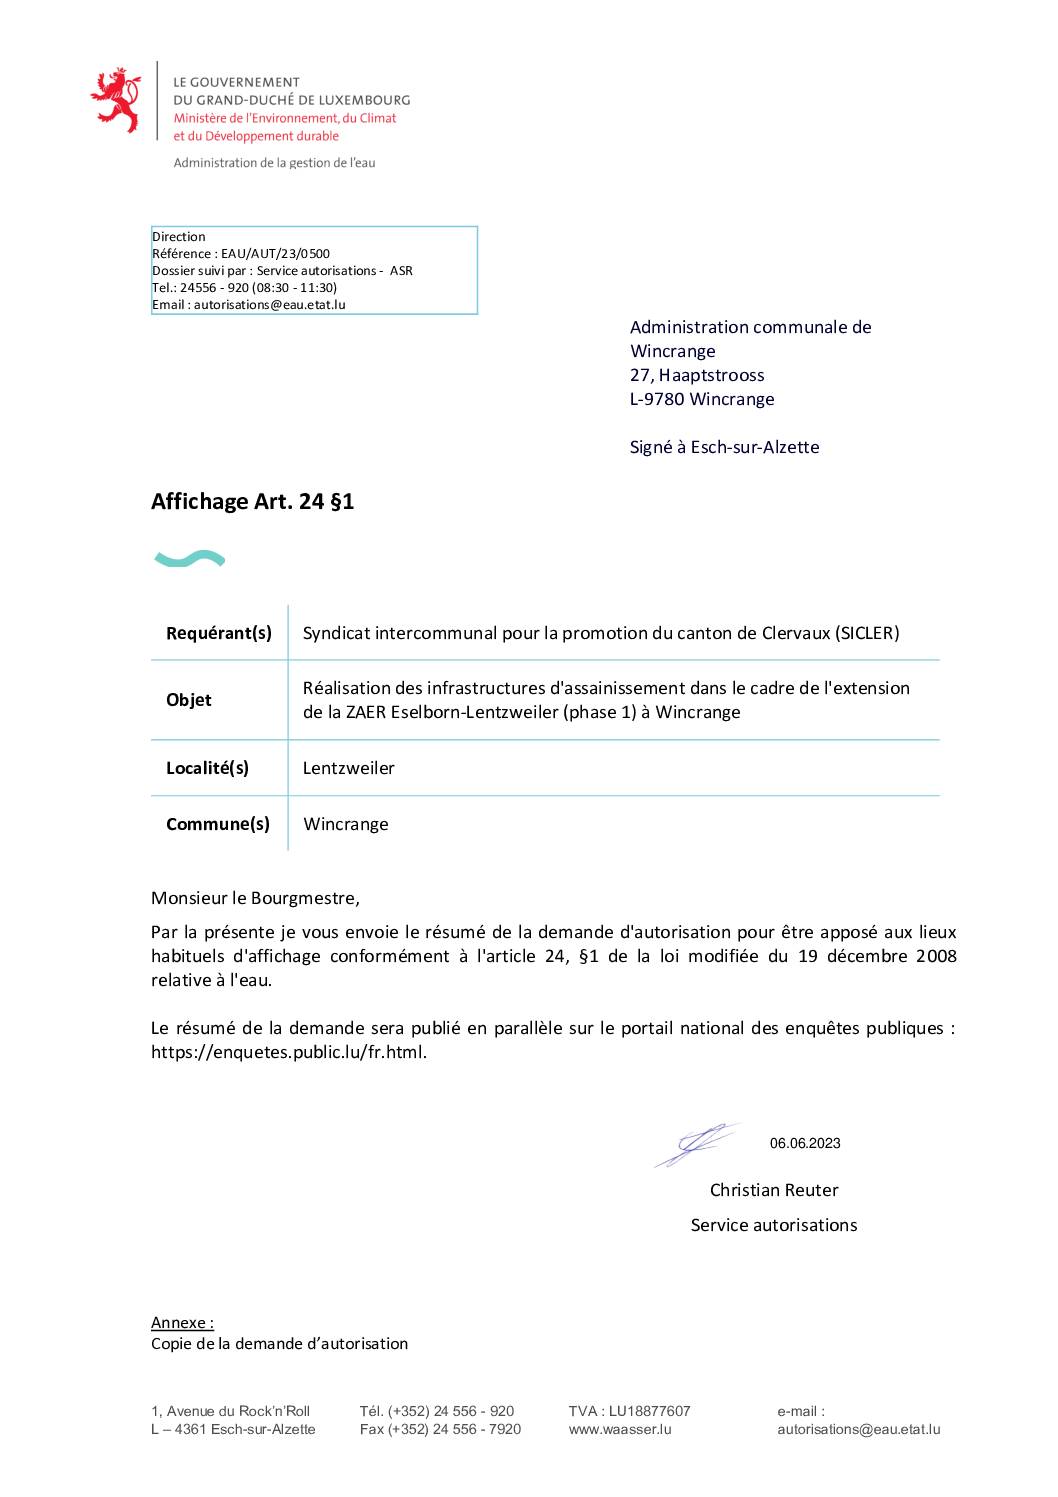 Demande d’autorisation – réalisation des infrastructures d’assainissement dans le cadre de l’extension de la ZAER Eselborn-Lentzweiler (phase 1) à Wincrange